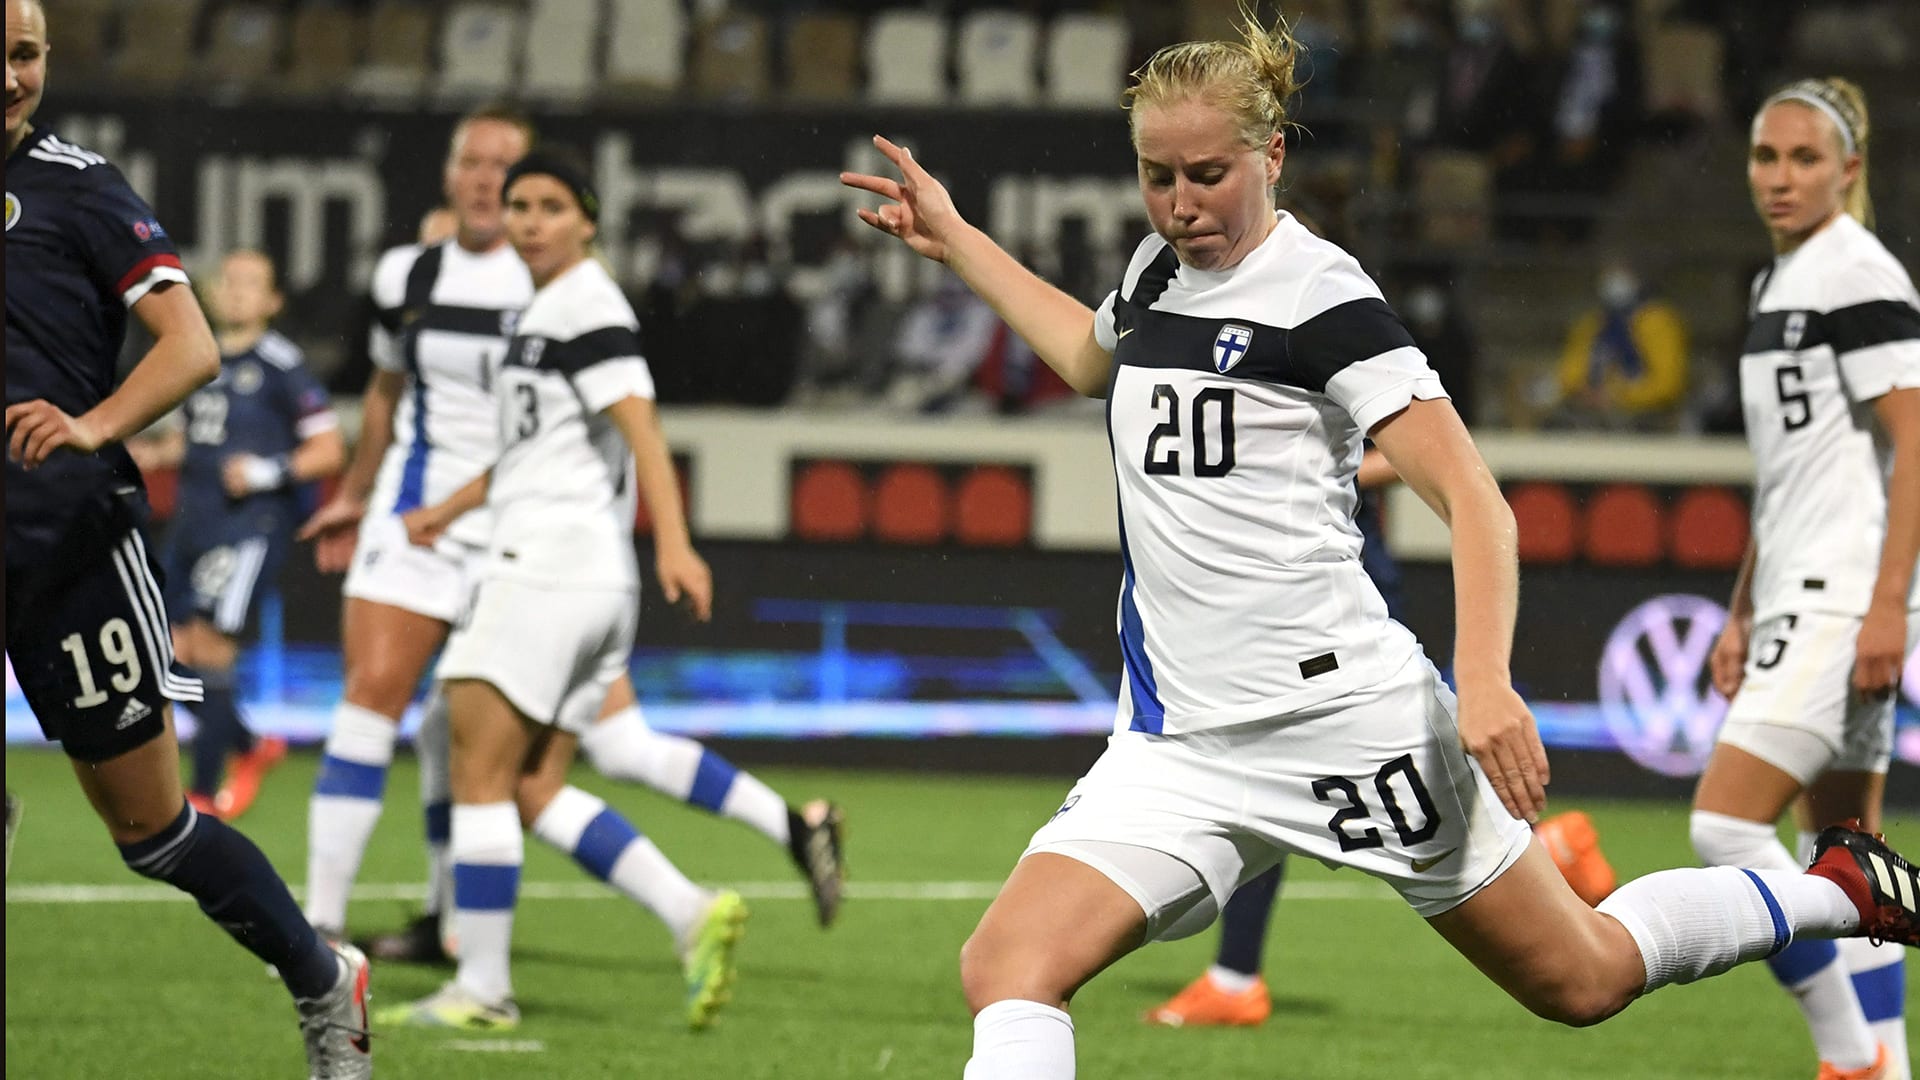 FIN - GEO | FIFAn jalkapallon naisten MM-karsinta | Yle Areena